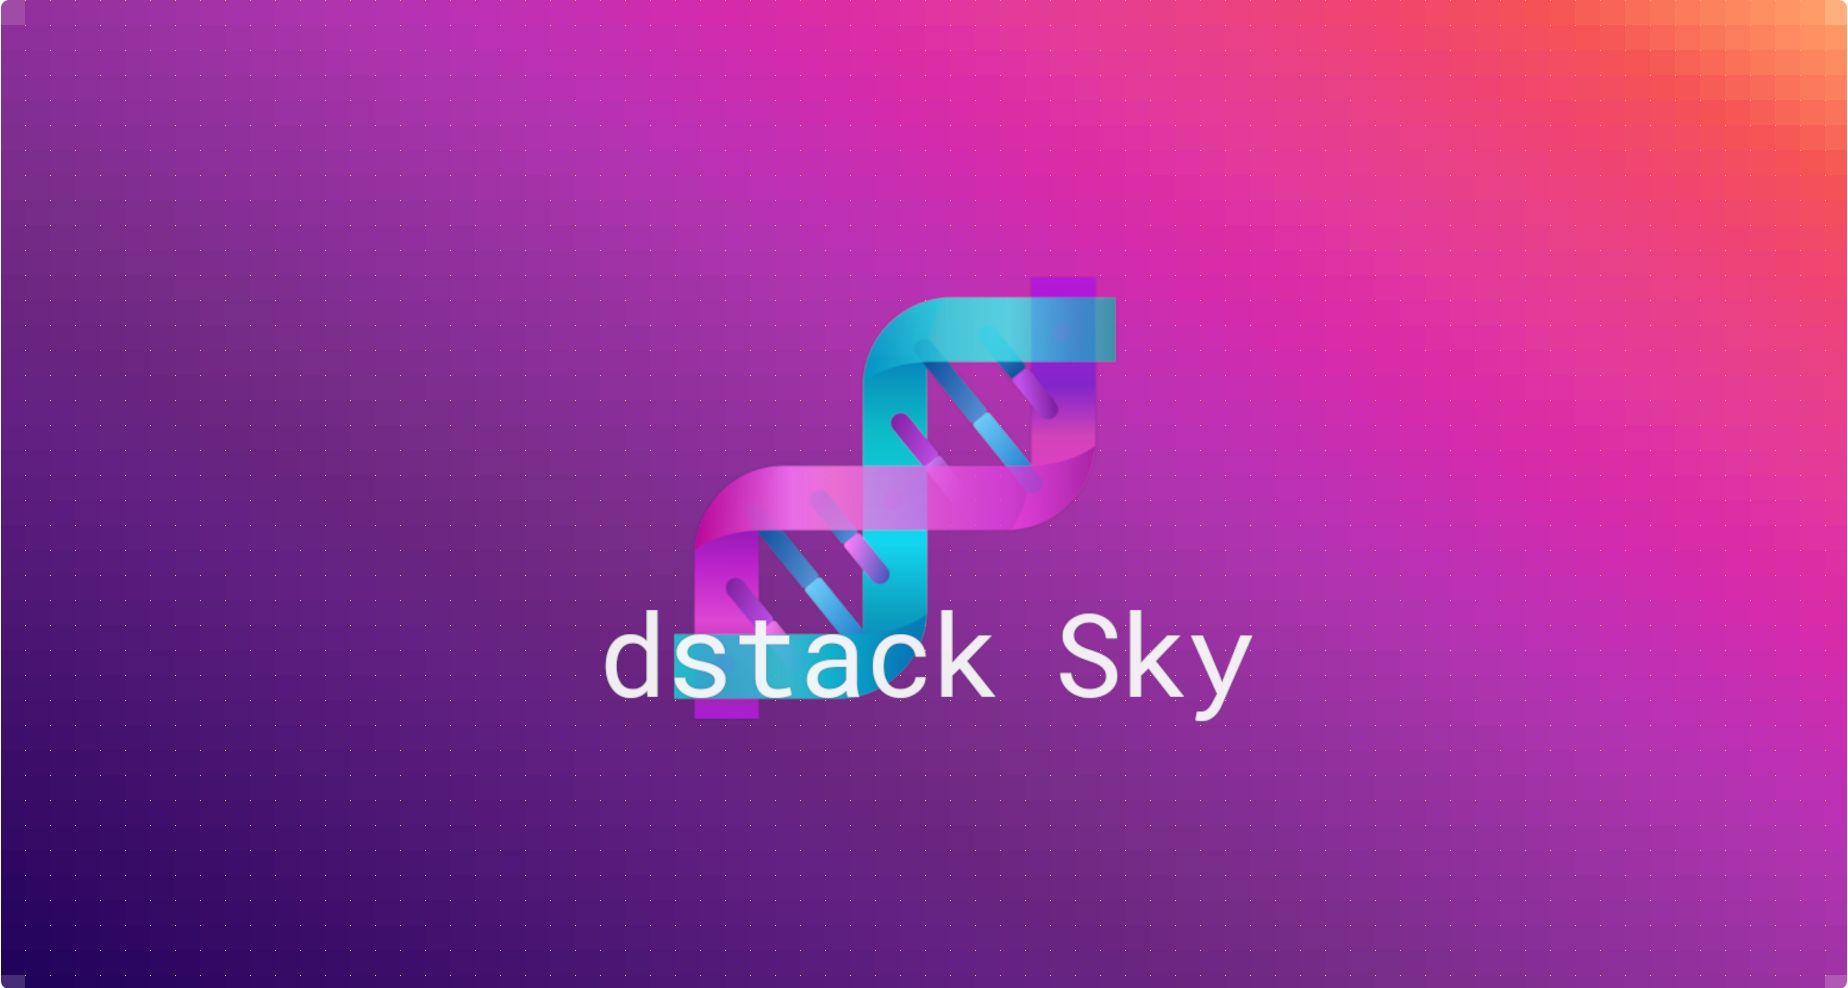 dstack-sky-banner.png